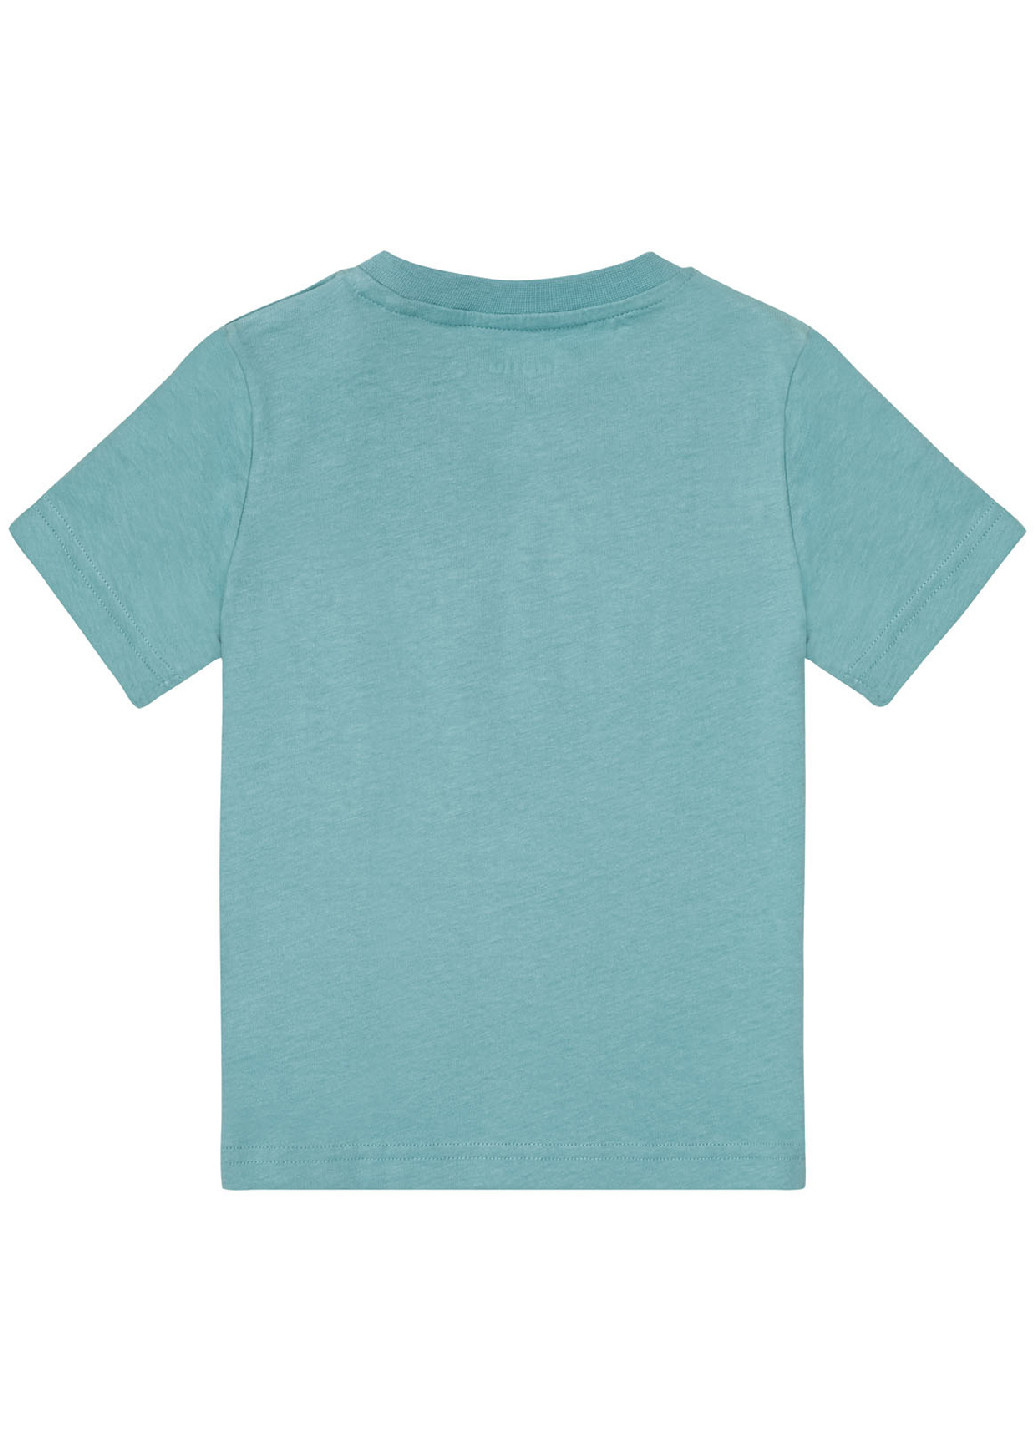 Комбинированная всесезон пижама (футболка, шорты) Lupilu